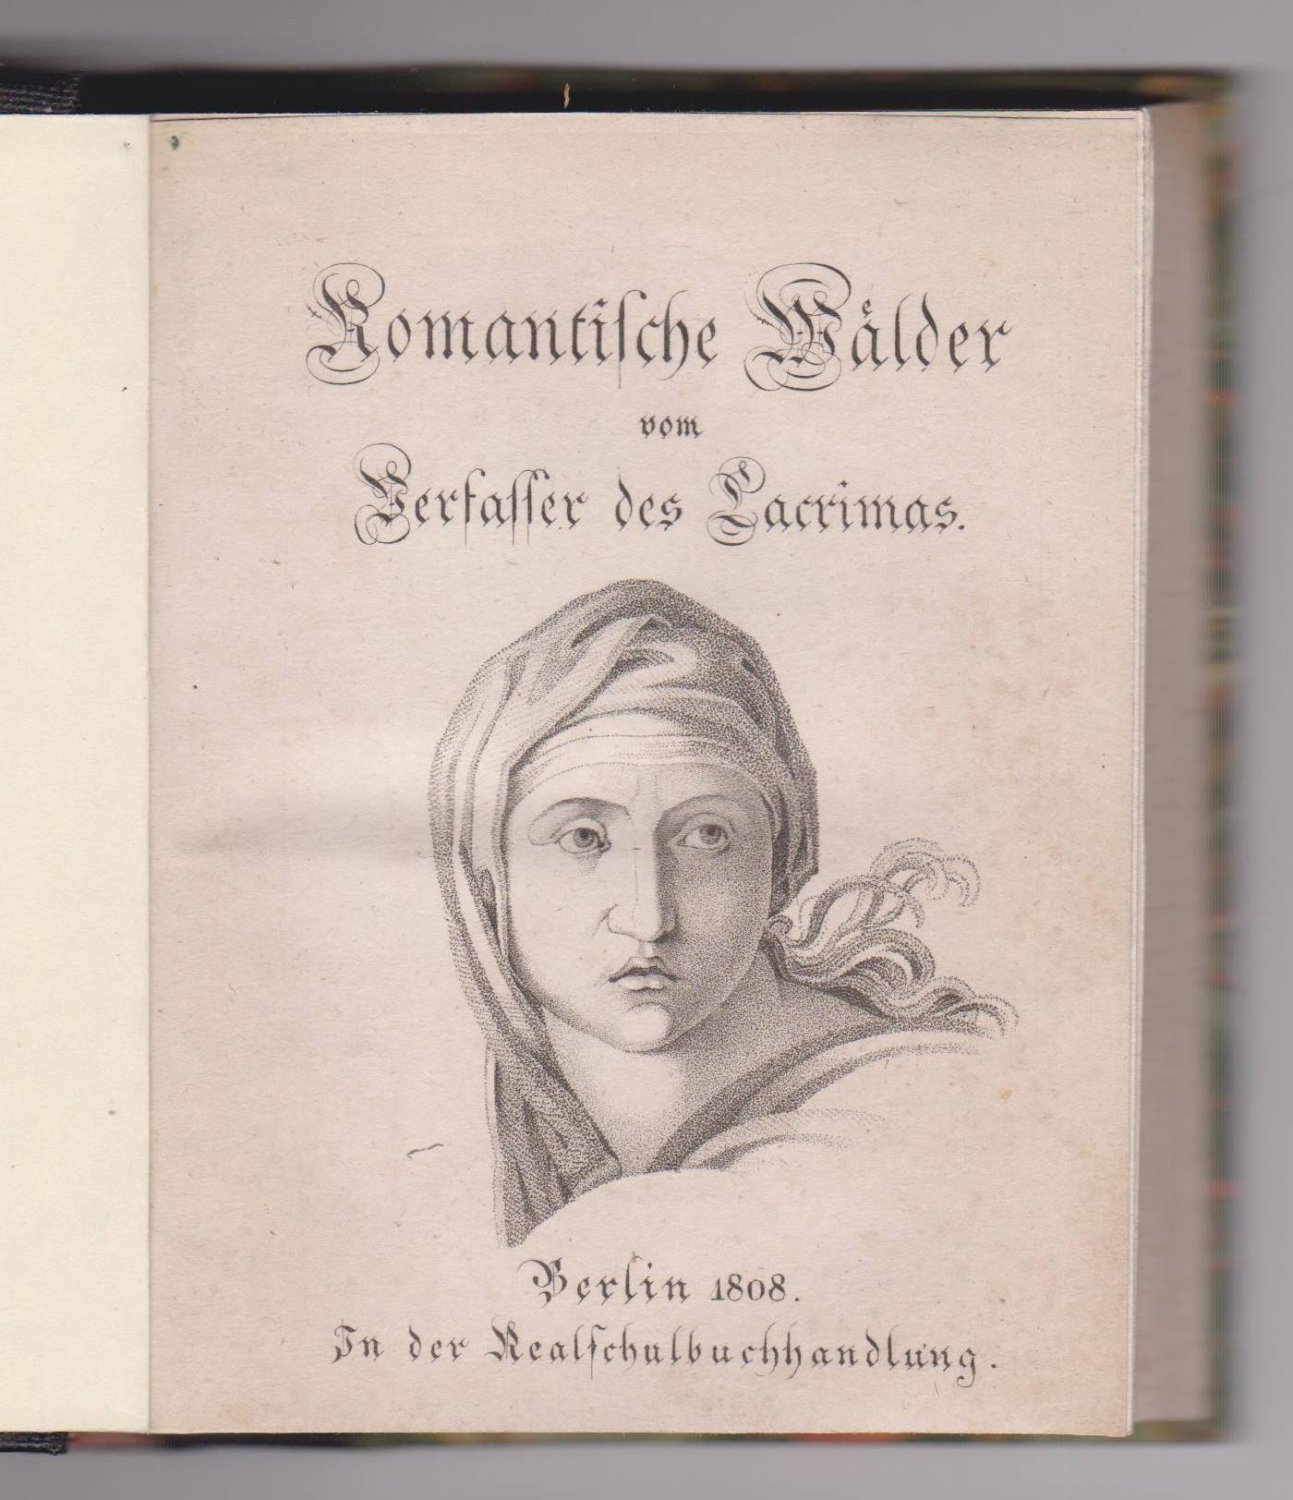 SCHÜTZ, Christian Wilhelm von. -  Romantische Waelder vom Verfasser des Lacrimas. 